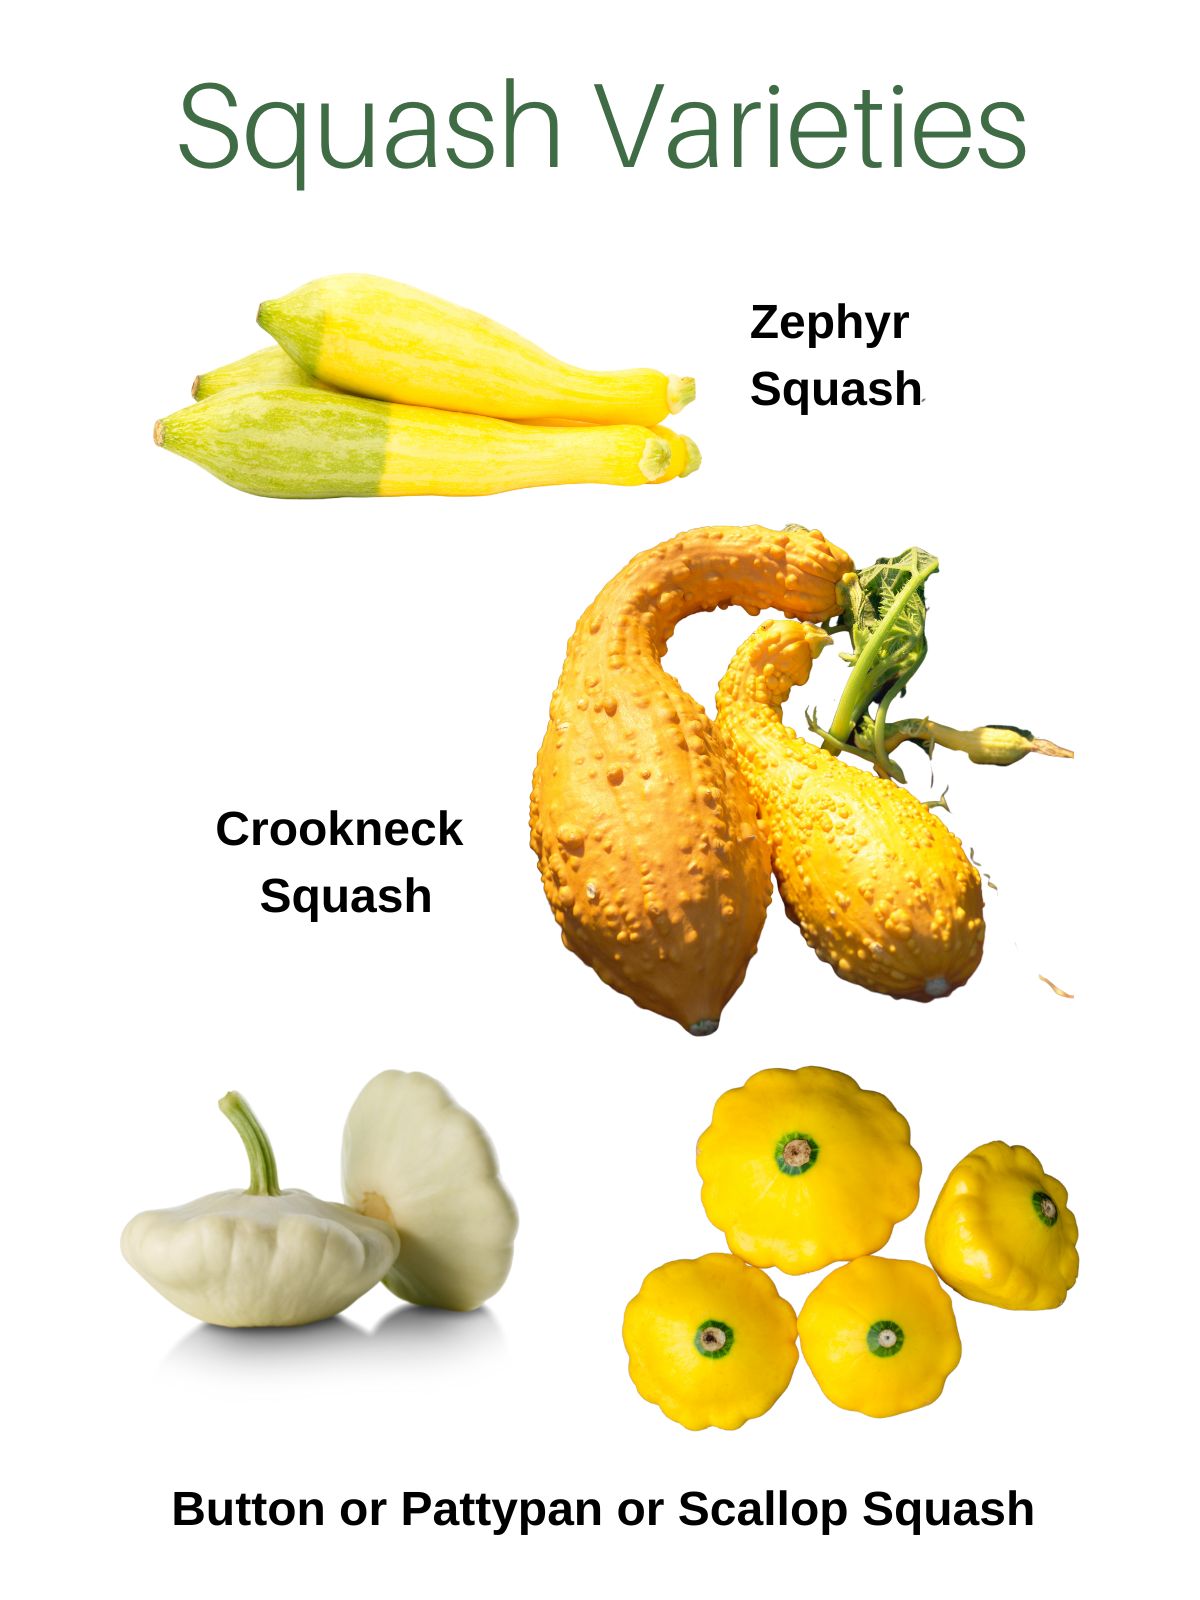 Labelled squash varieties.